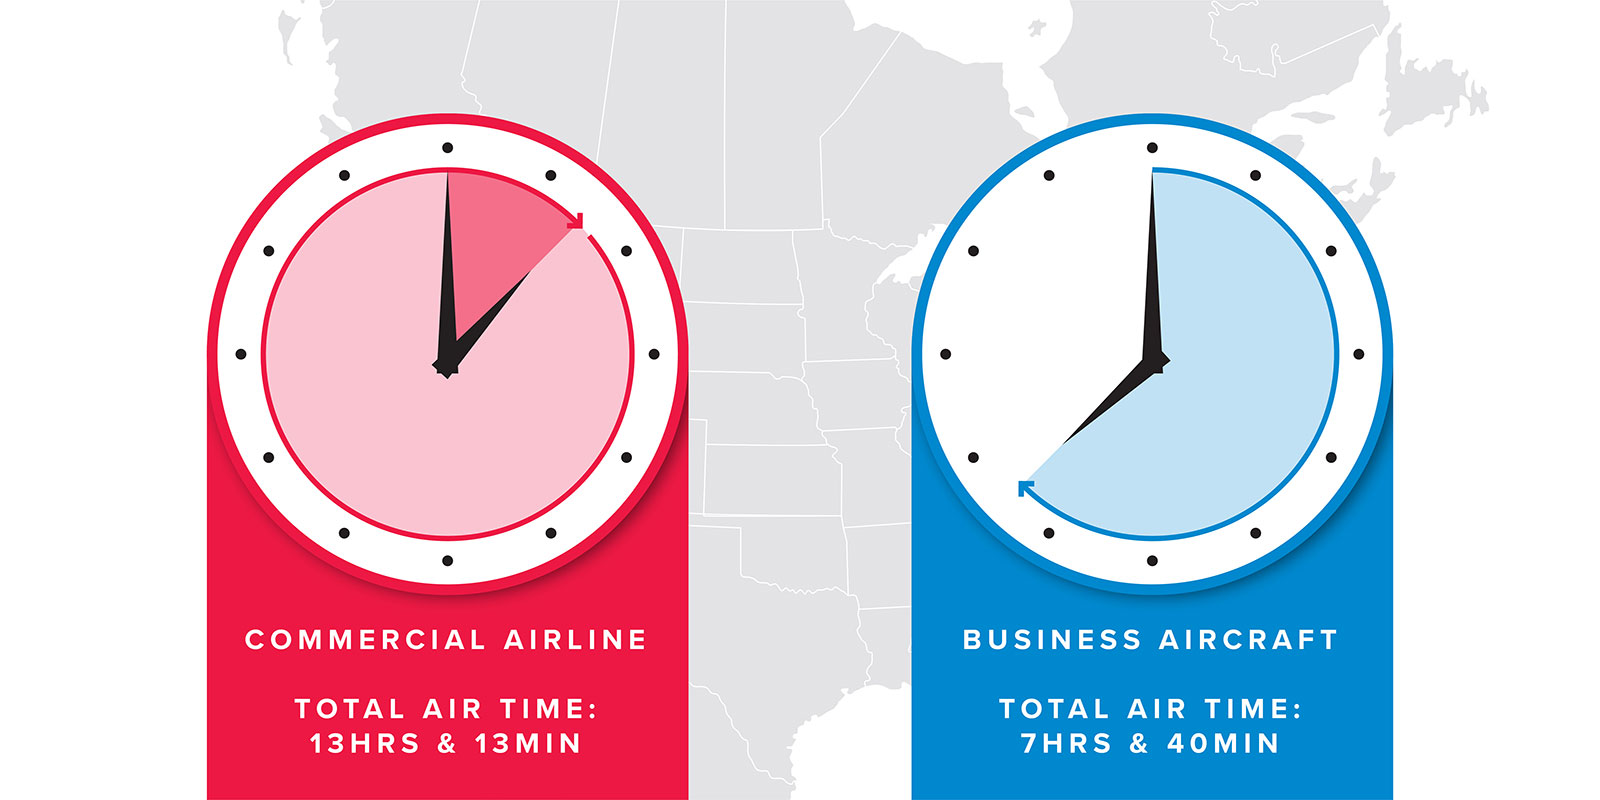 3 18 - هواپیماهای تجاری یا خطوط هوایی تجاری؟ پاسخ؛ ارزش زمان شماست.